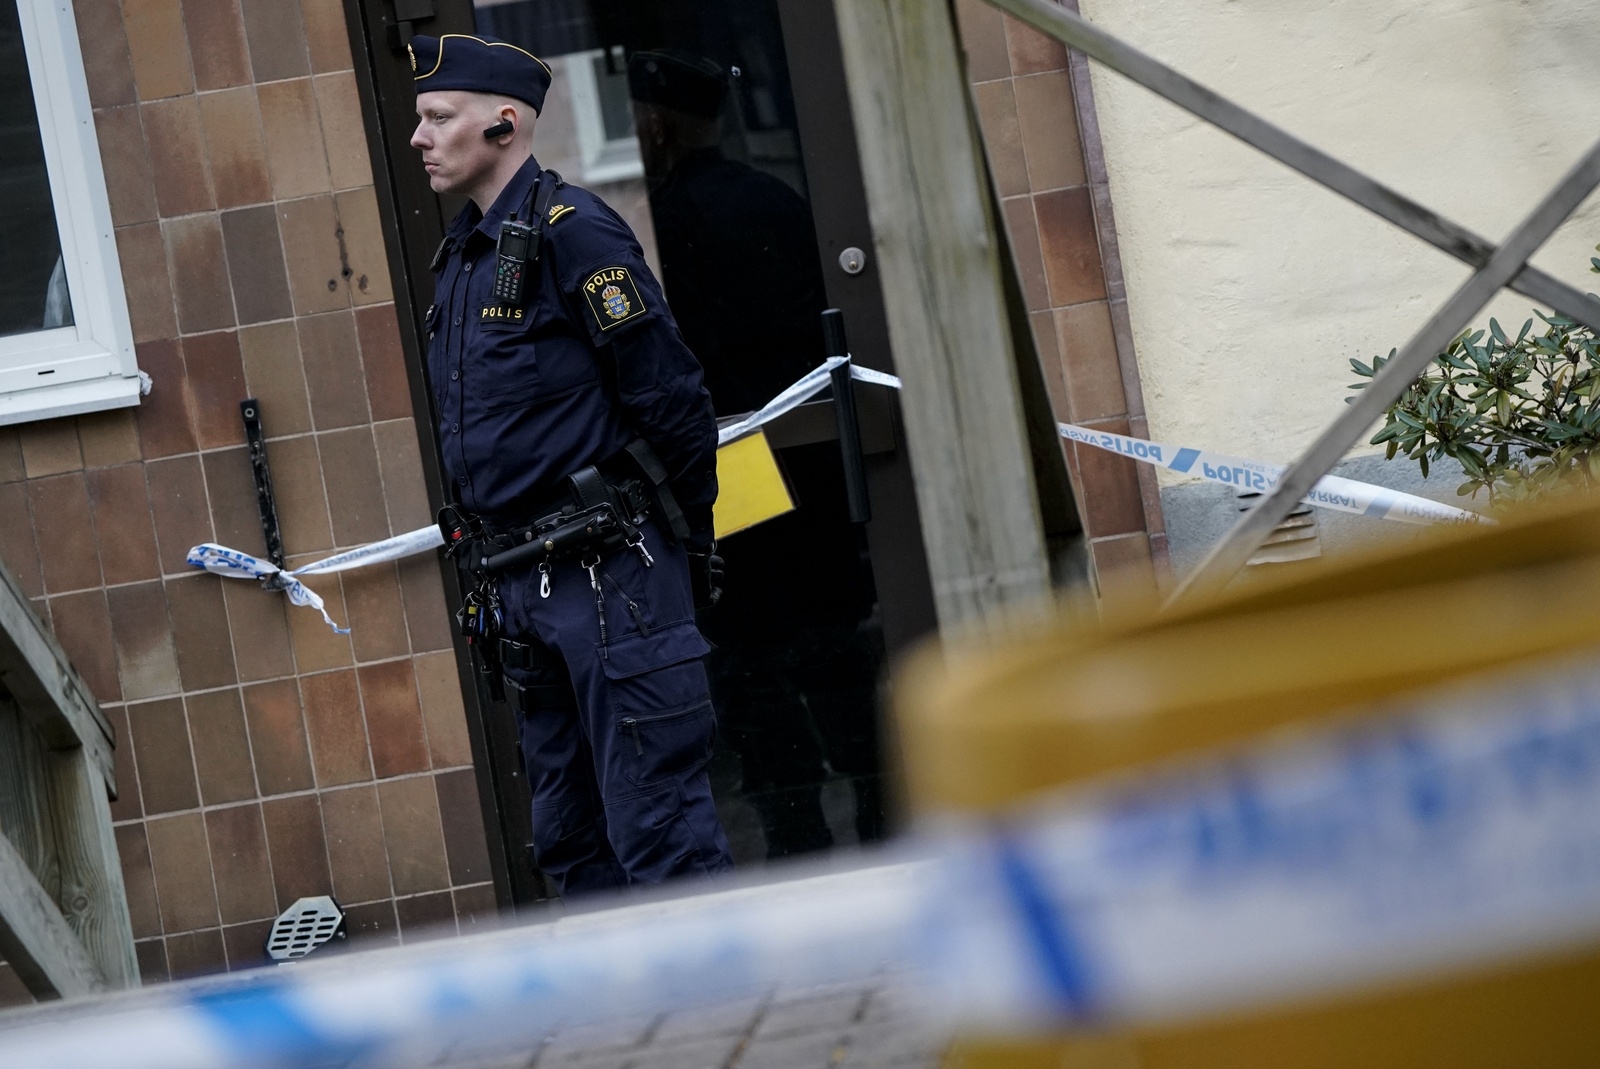 Polis och avspärrningar på platsen för mordet på den 30-åriga mannen i Kristianstad förra året. 
Foto: Johan Nilsson / TT / Kod 50090